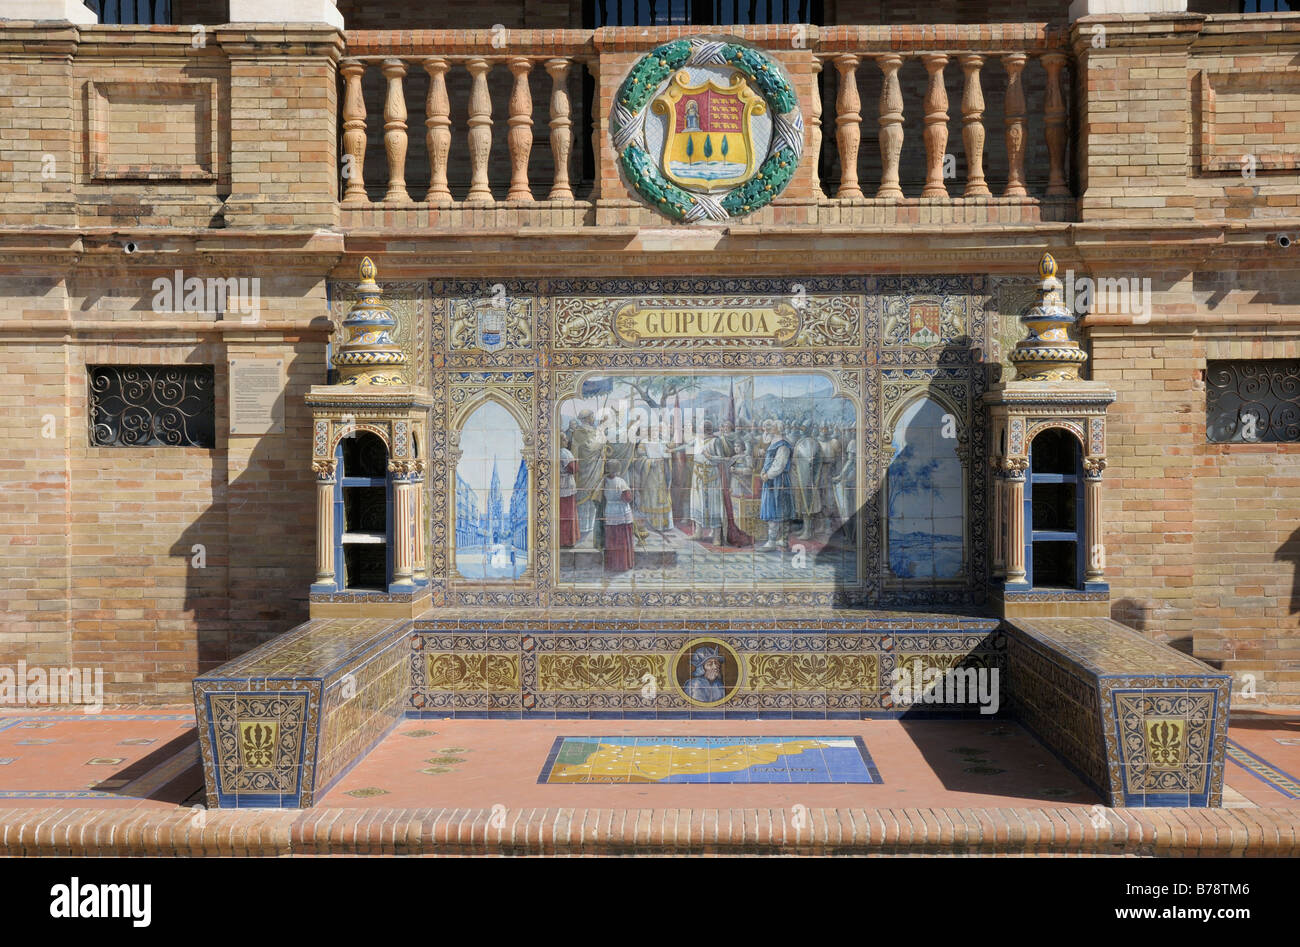 Dans la mosaïque, Azulejo carreaux, de Guipuzcoa, Plaza de Espana, Andalousie, Espagne, Europe Banque D'Images